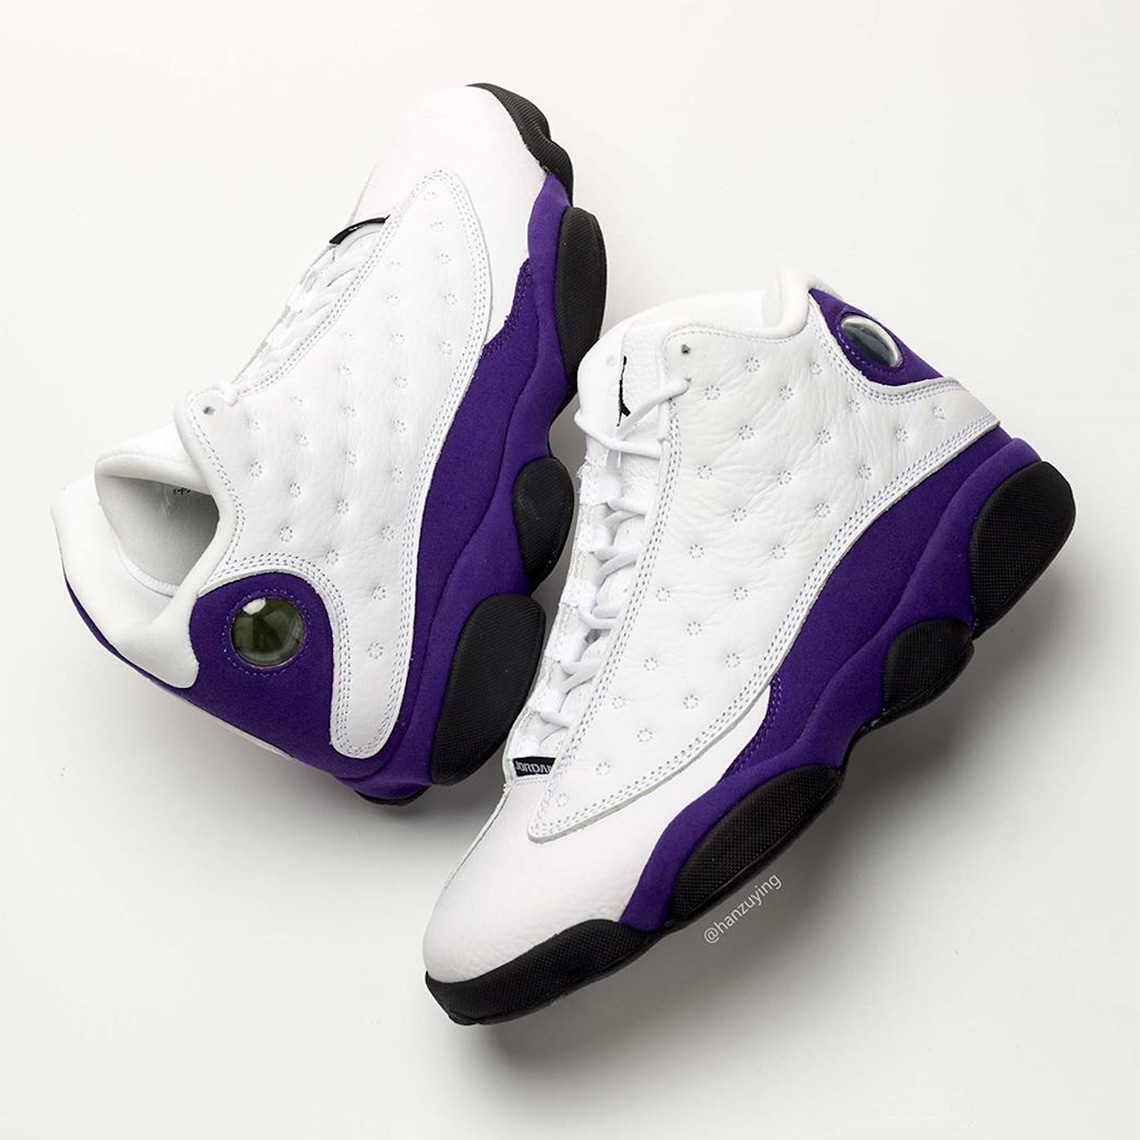 Air Jordan 13 Lakers 414571-105 Release Date | SneakerNews.com